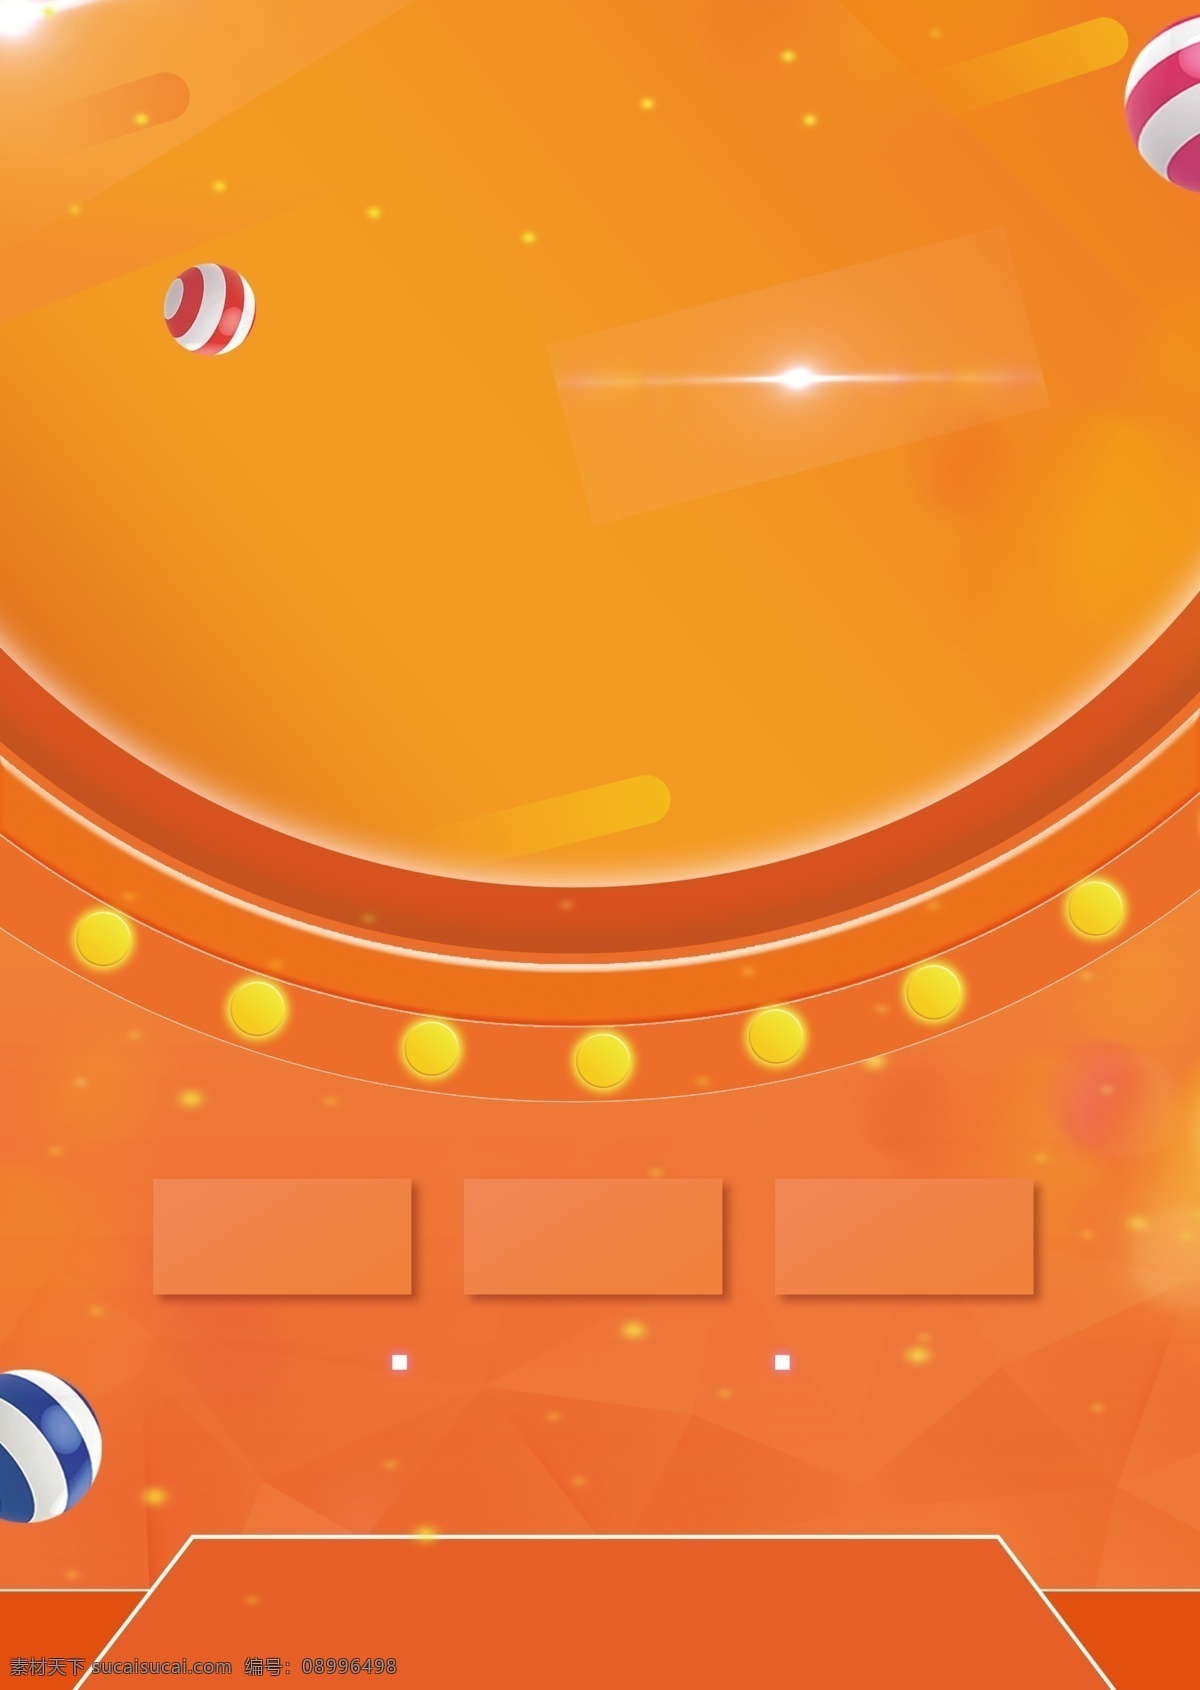 清新 橙 光 圆点 广告 背景 简约 橙色背景 热气球 圆圈 广告背景 光点 手绘